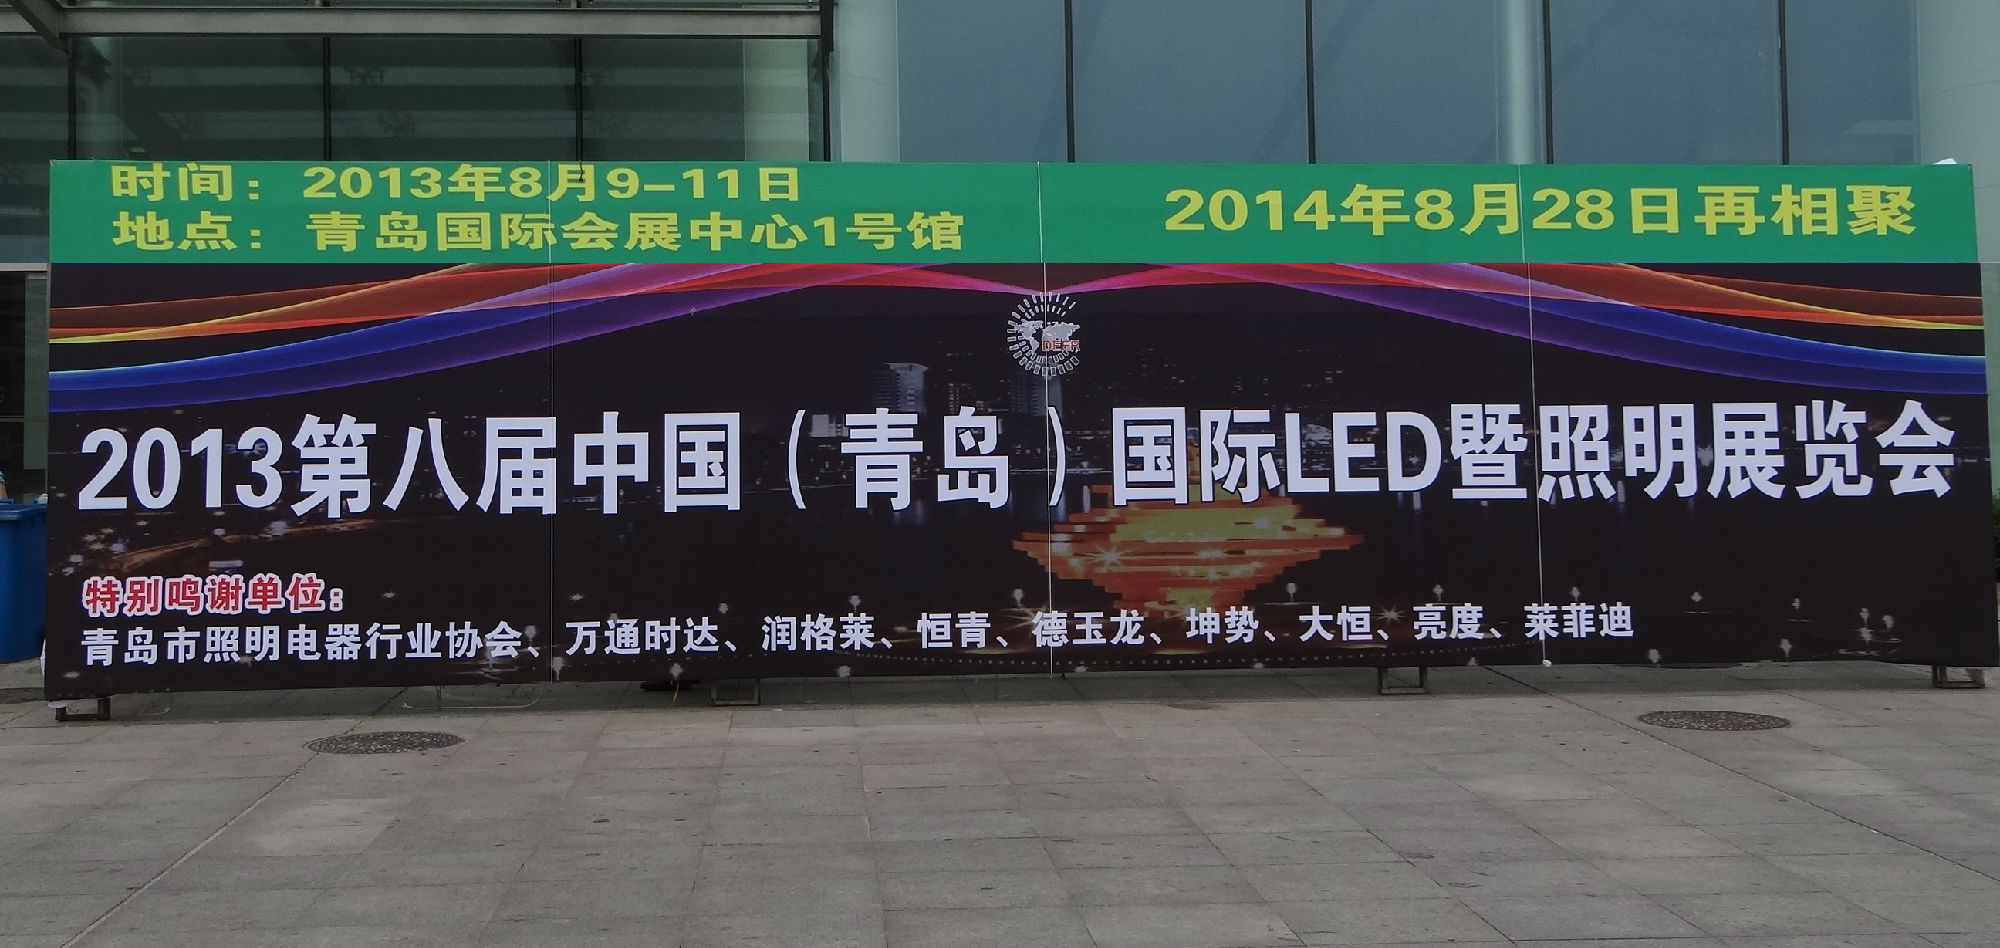 2014第九届中国青岛国际照明展览会简介.jpg